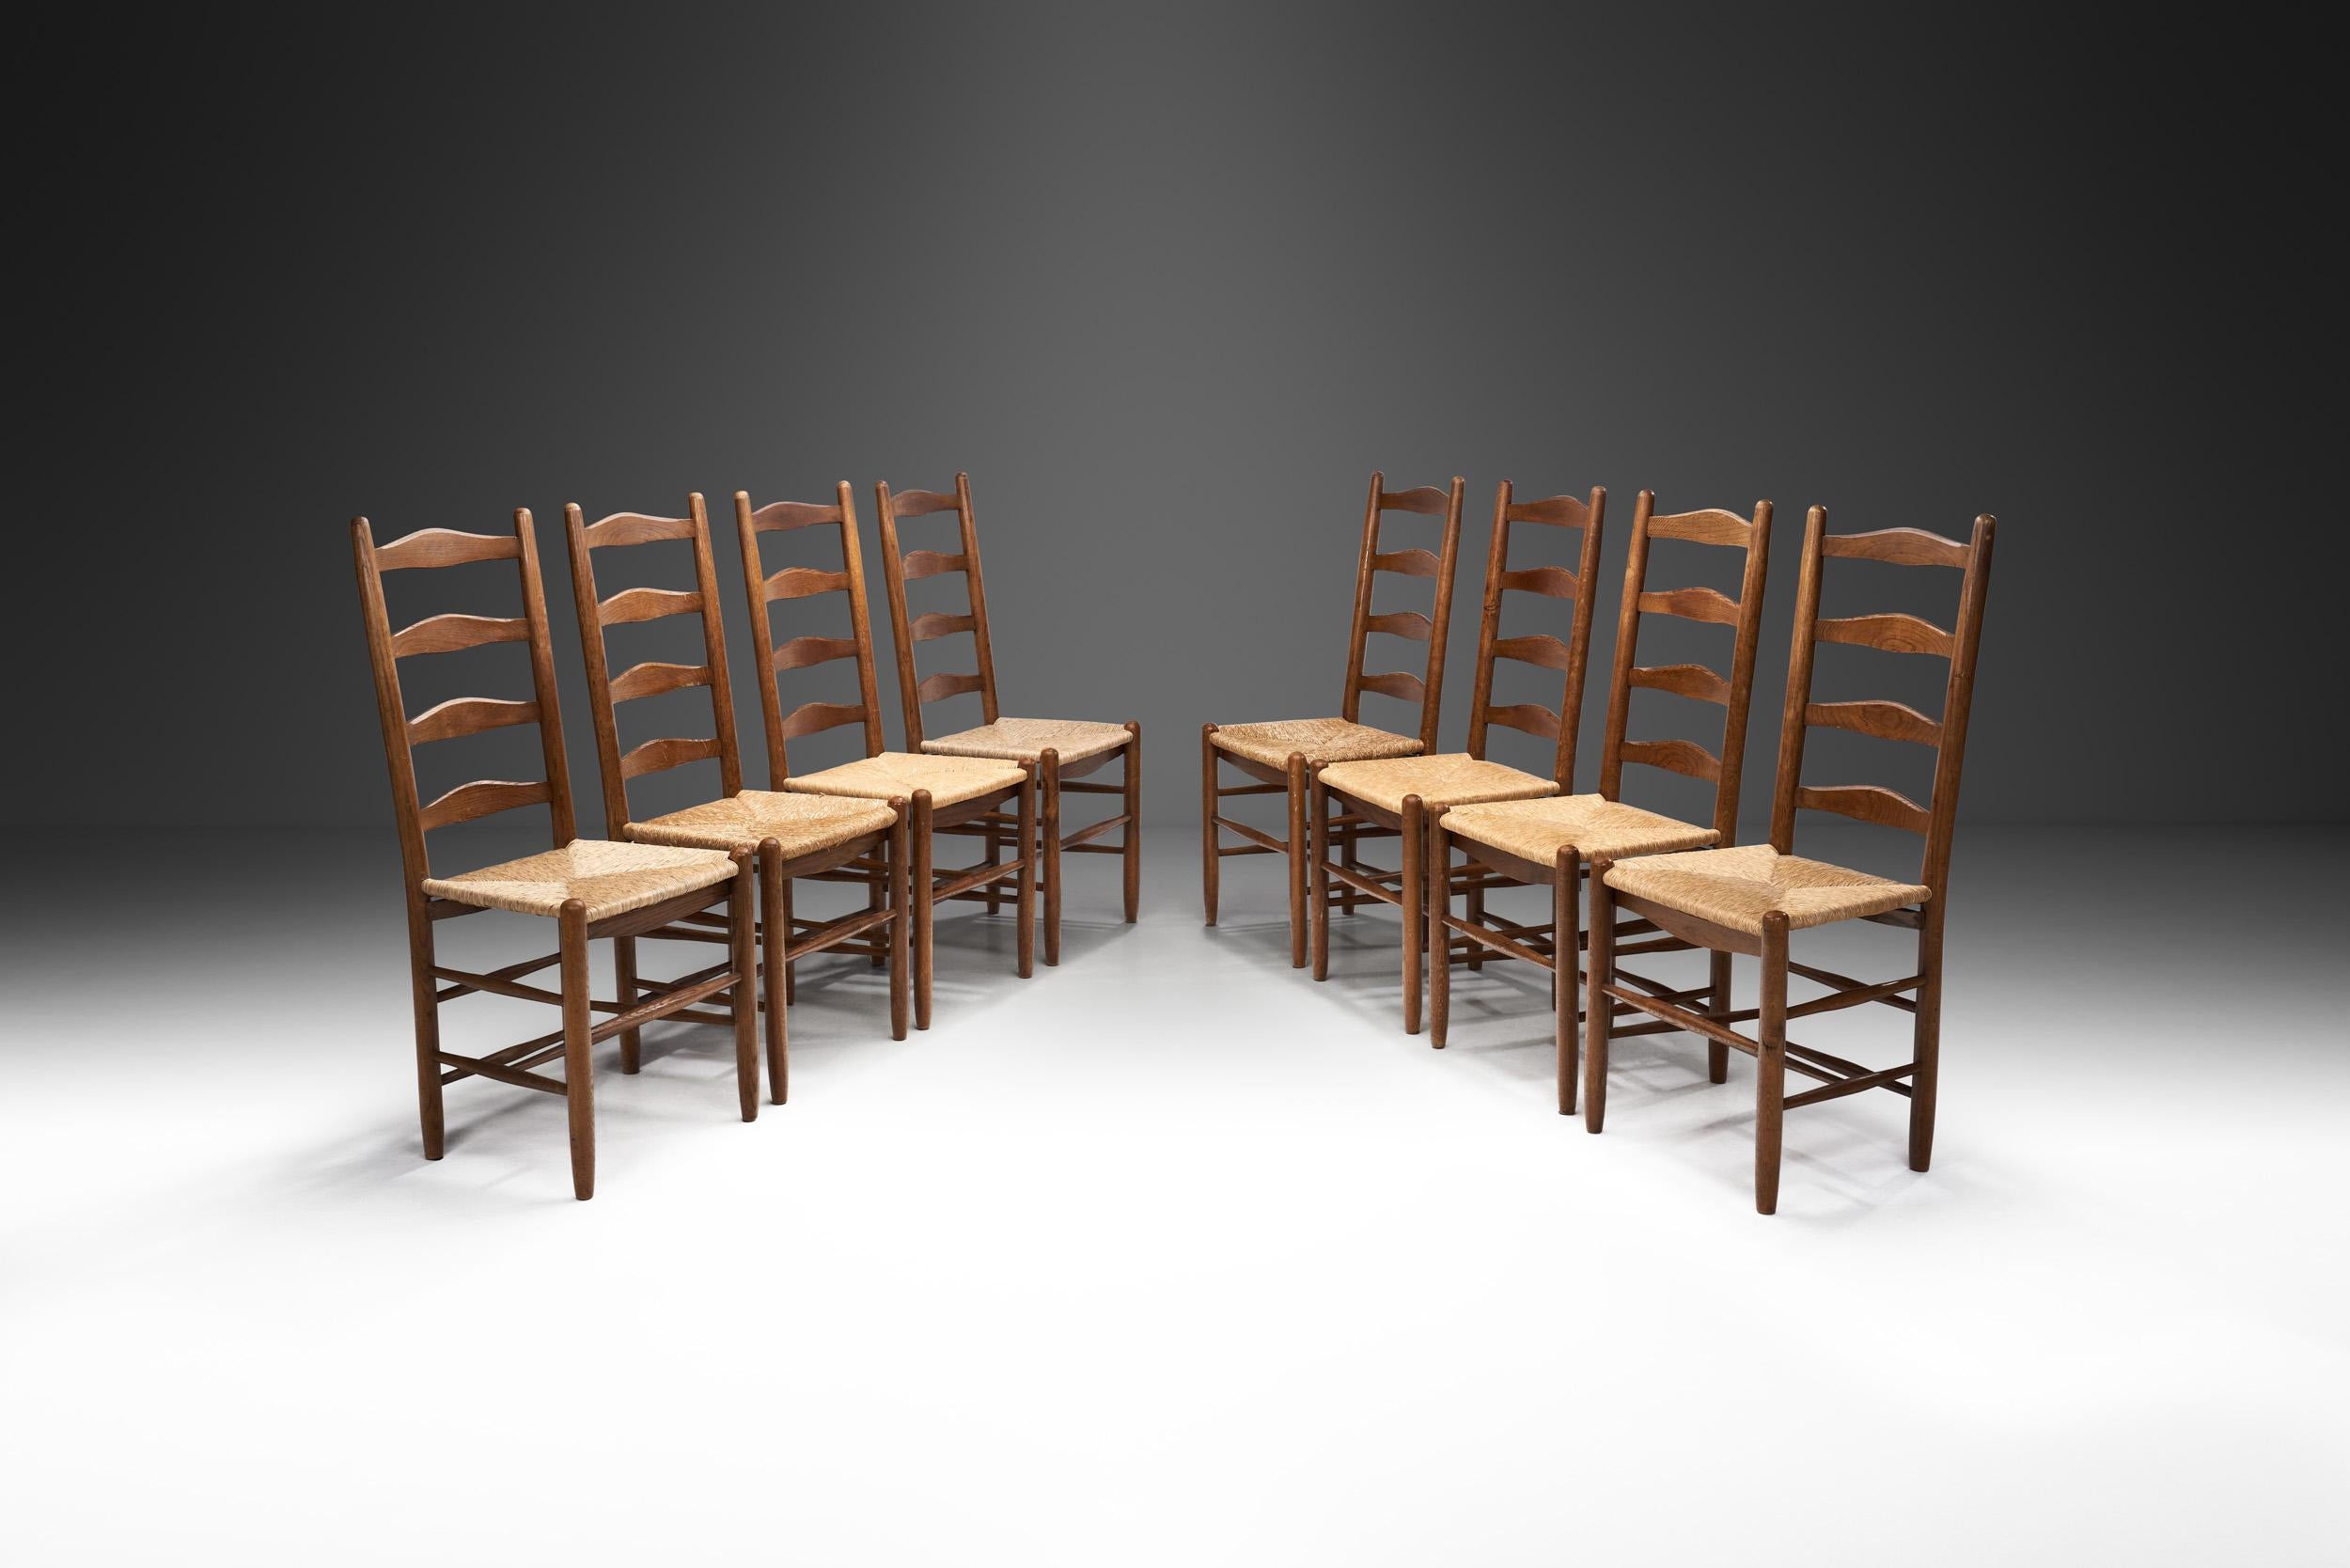 Au cours du XXe siècle, les designers européens ont fusionné les techniques et les styles artisanaux traditionnels avec les matériaux, le design et l'industrie modernes. La chaise à dossier en échelle était l'une des chaises les plus populaires de